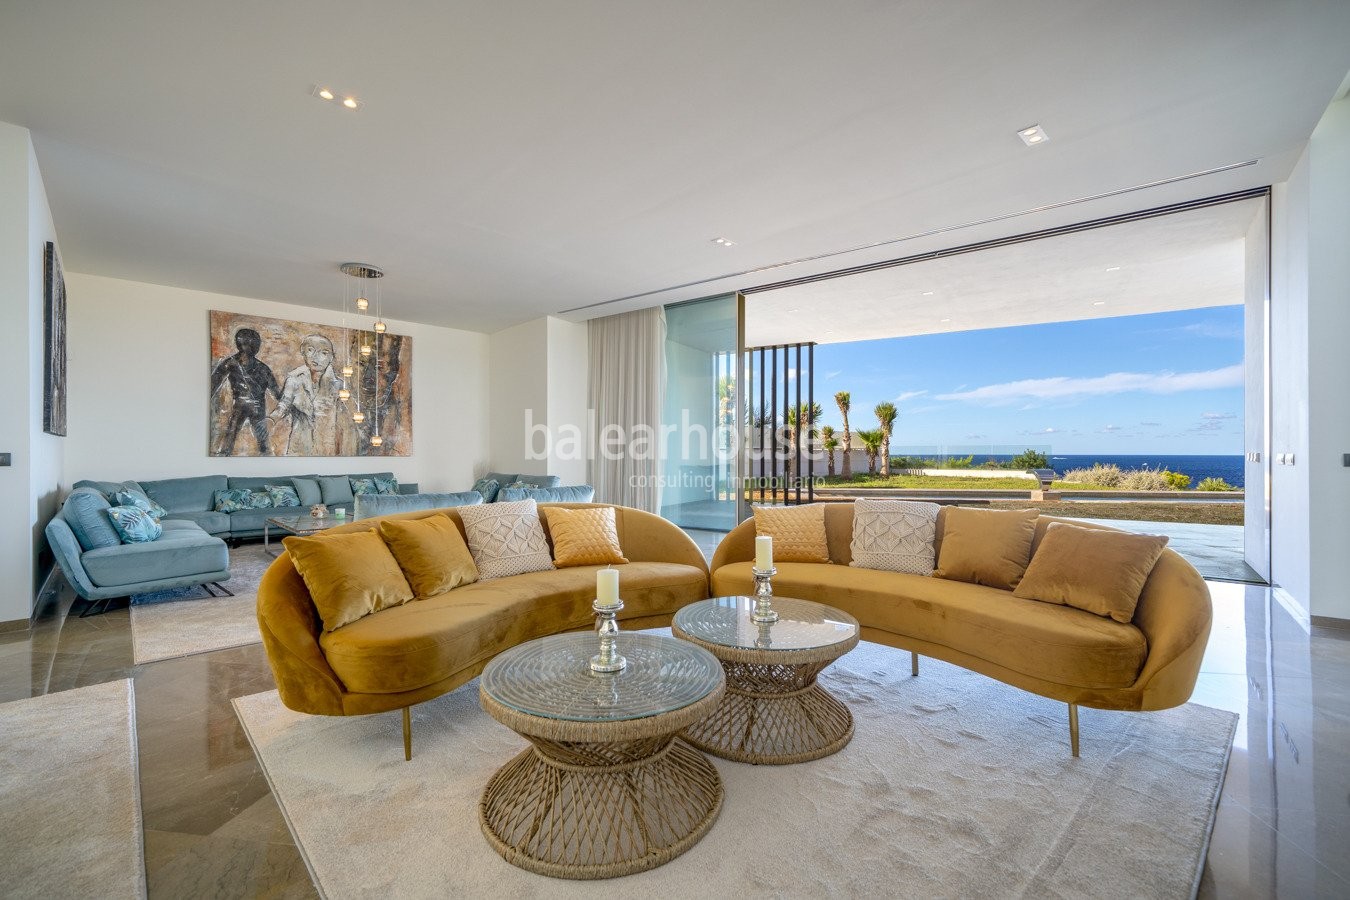 Neue moderne Villa in erster Reihe mit spektakulärem Meerblick in Port Adriano.